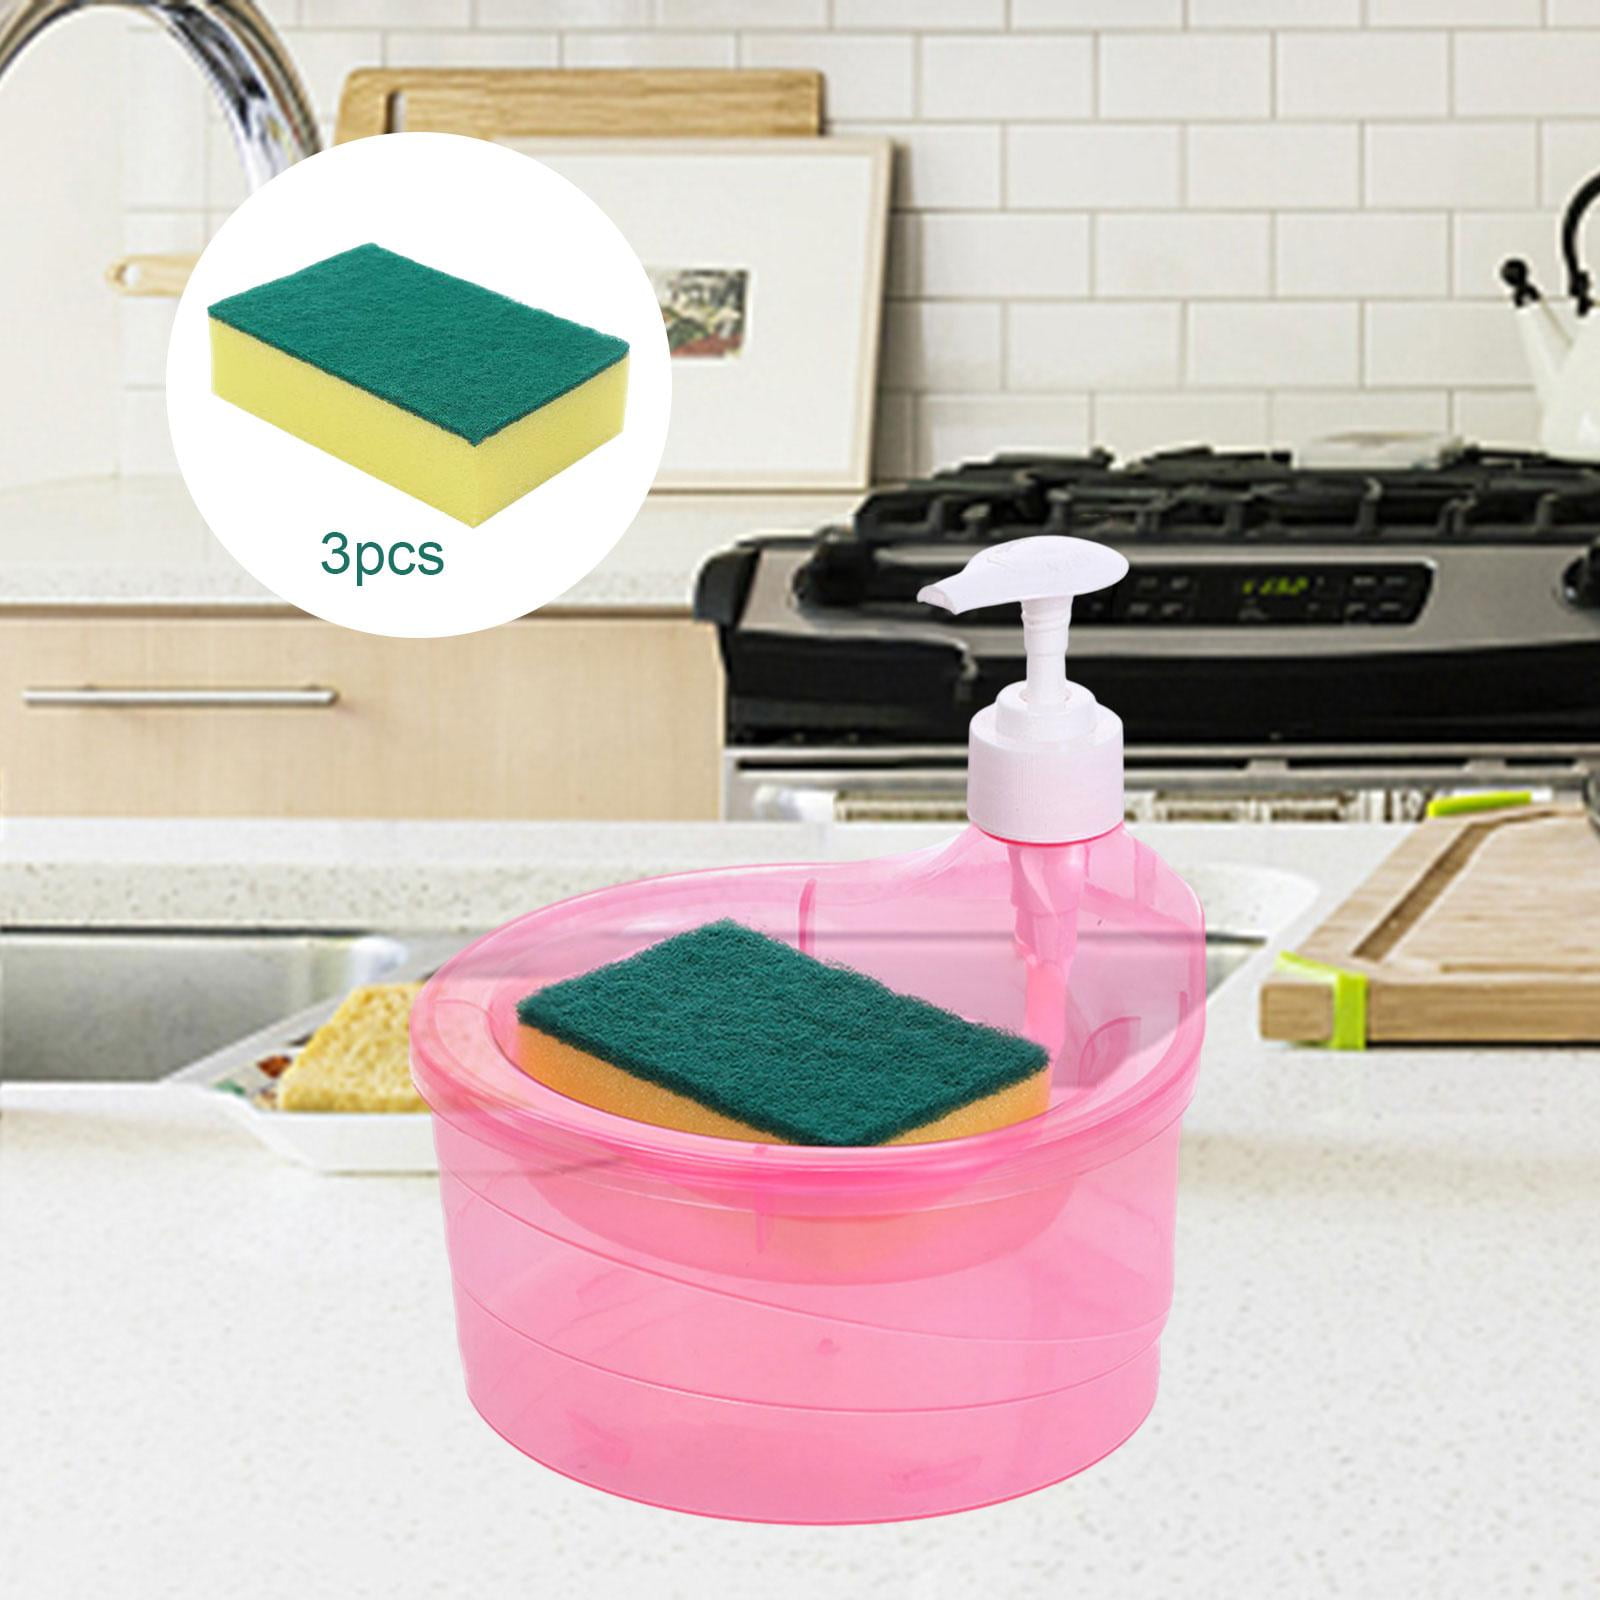 ＫＬＫＣＭＳ Dish Soap Dispenser and Sponge Holder Dish Washing Liquid Dispenser  5 Sponge Reusable Sink Dish Washing Soap Dispenser for Home Restaurant